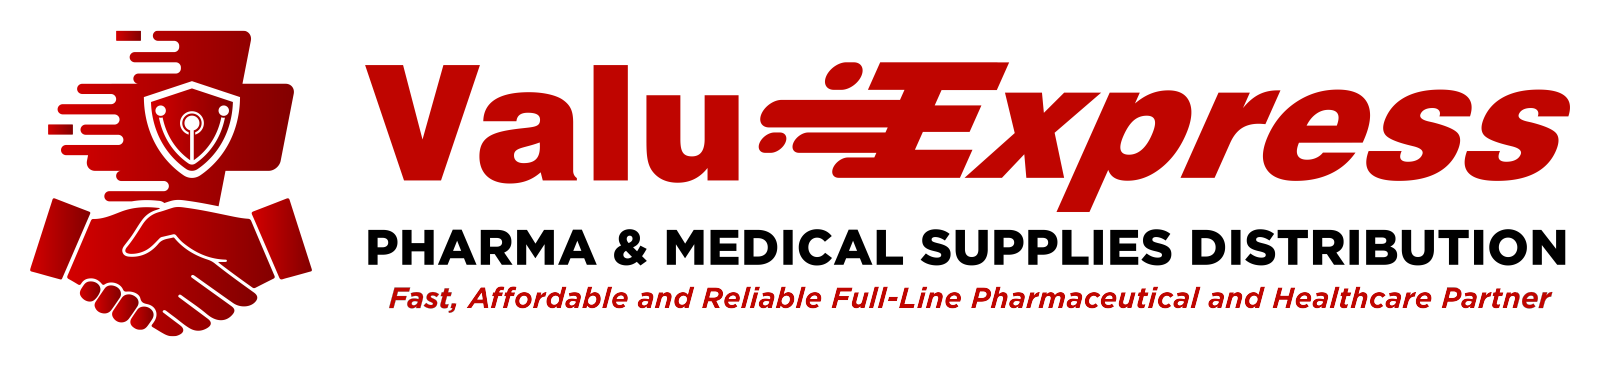 Valu-Express logo